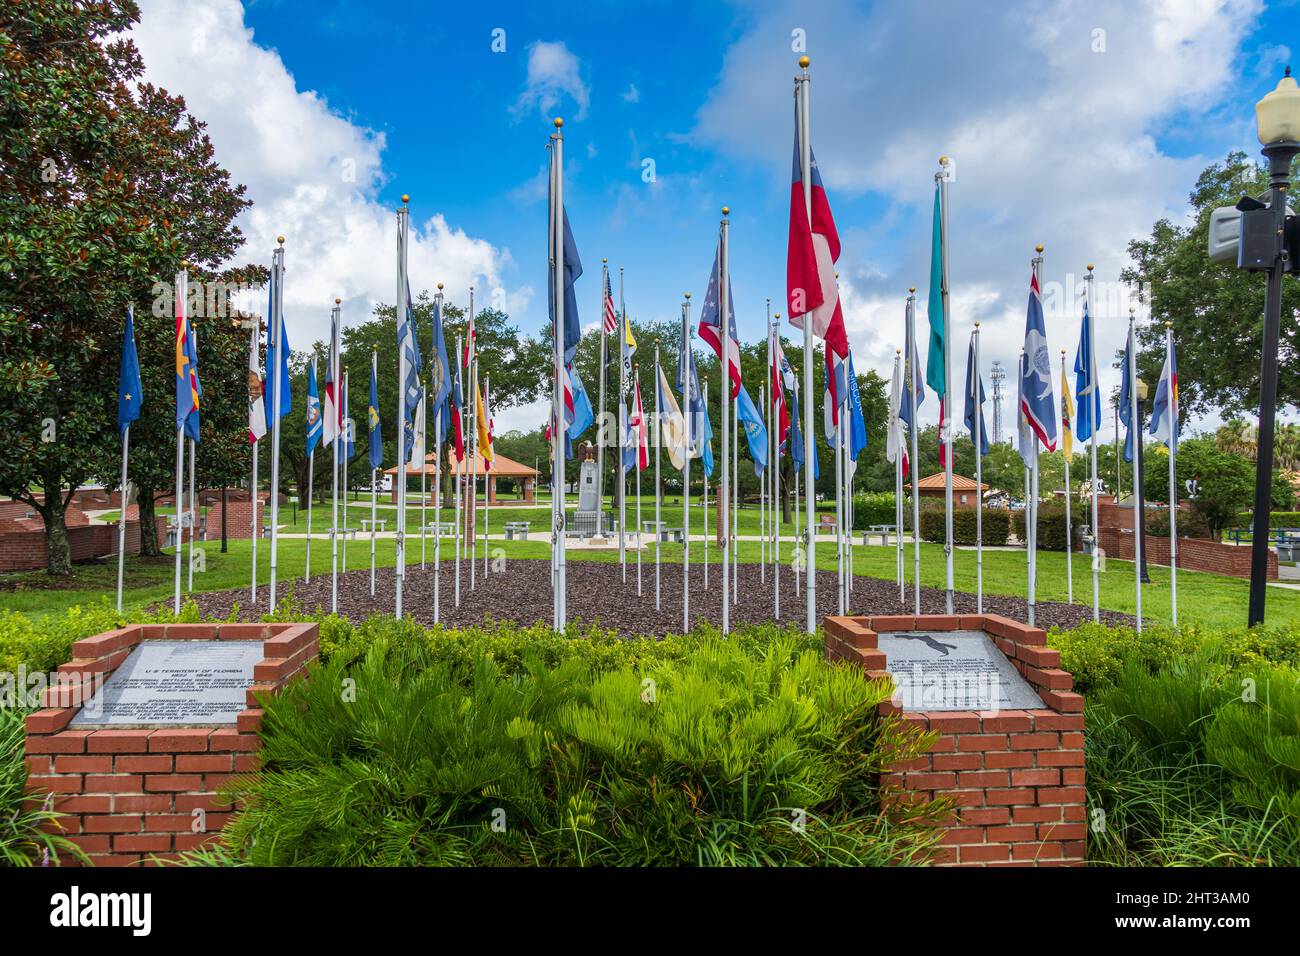 Banderas estatales en Ocala Marion County Veteran's Memorial Park - Ocala, Florida, Estados Unidos Foto de stock